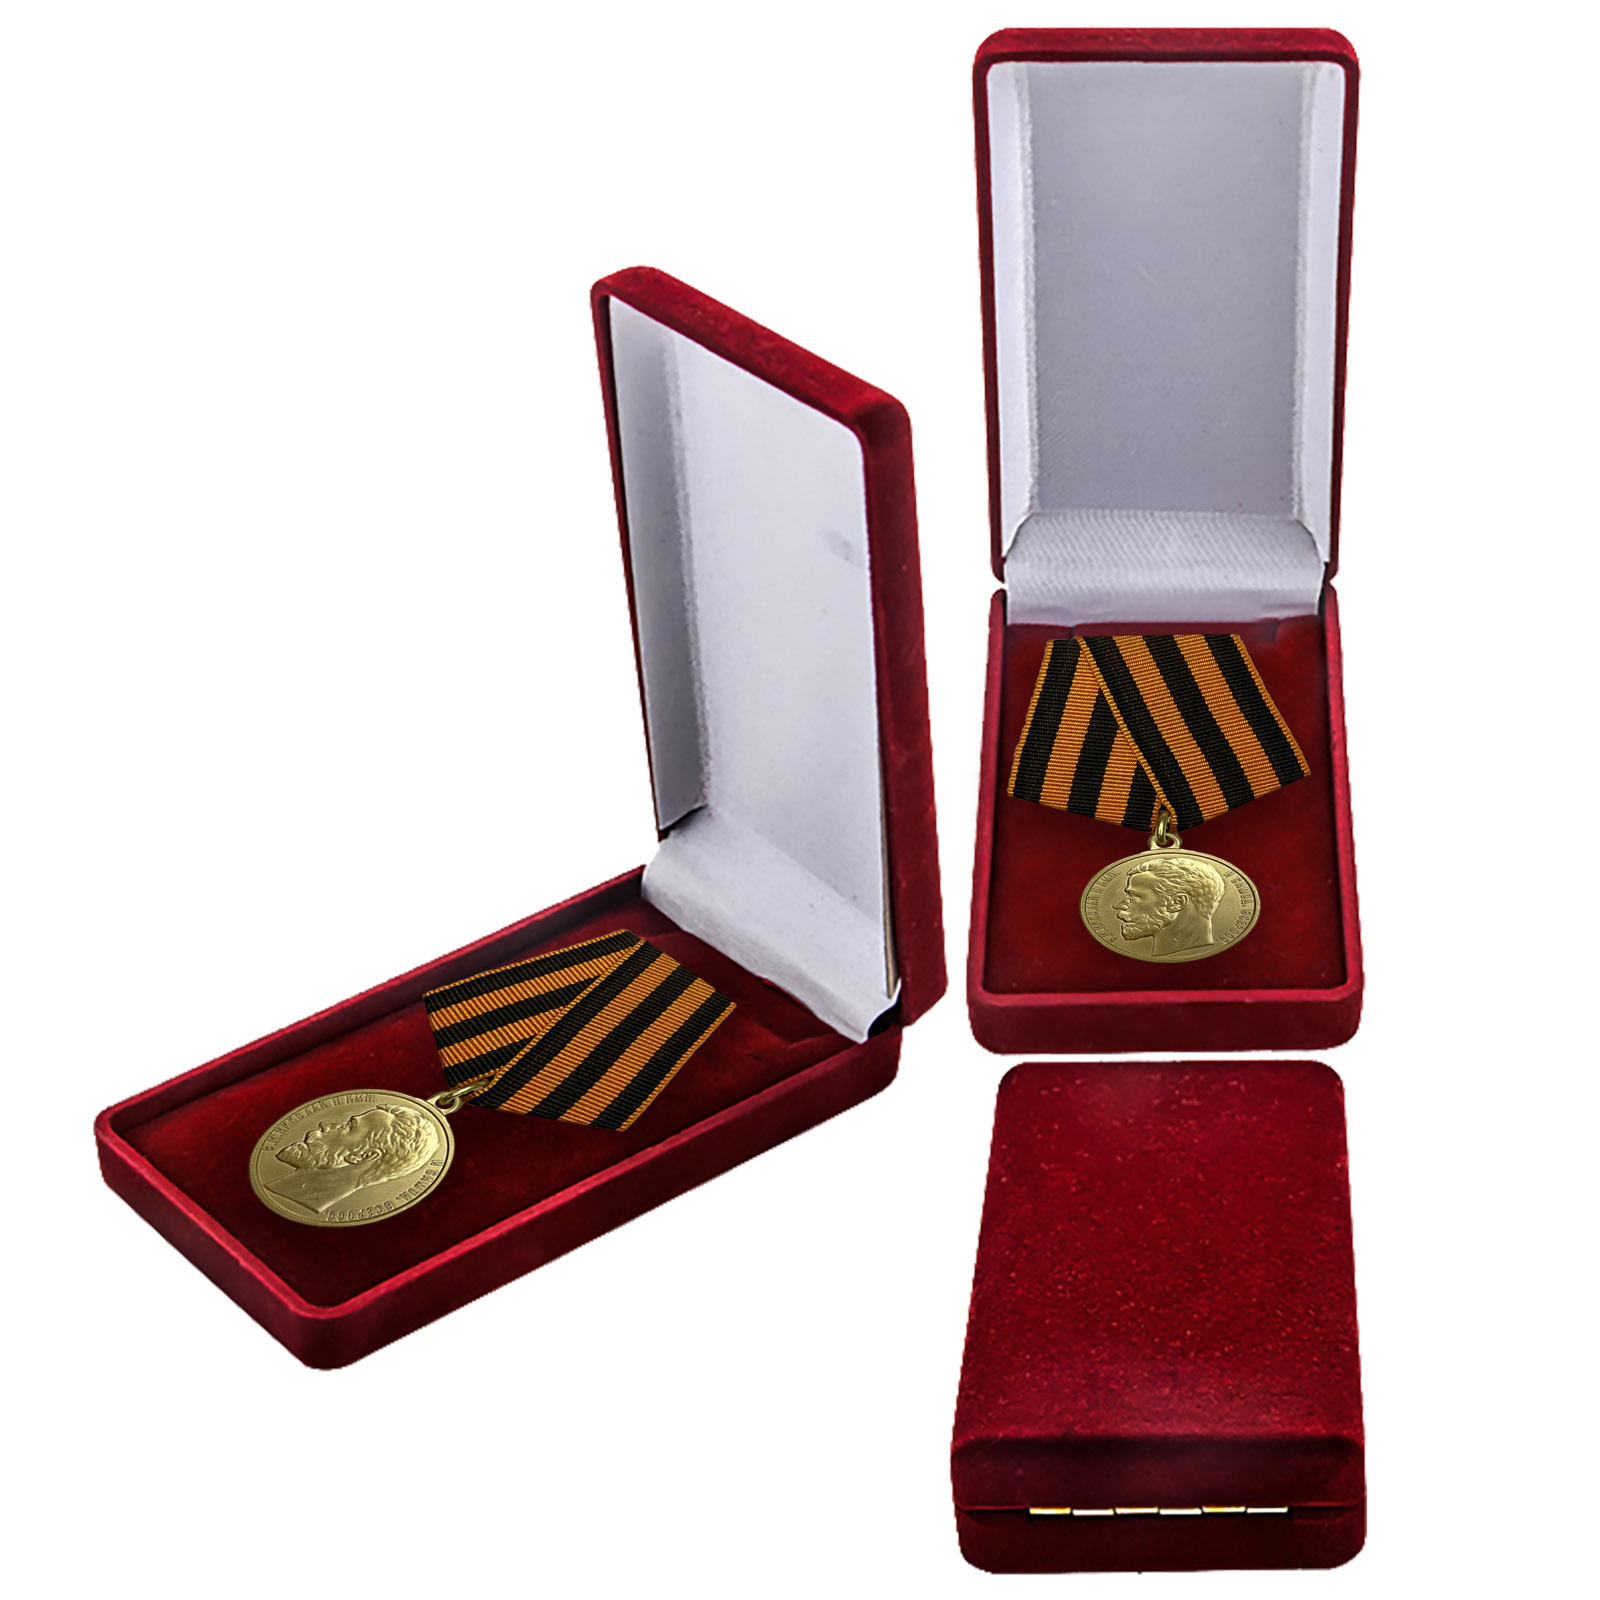 Купить медаль За храбрость 1 степени (Николай 2) в подарок онлайн